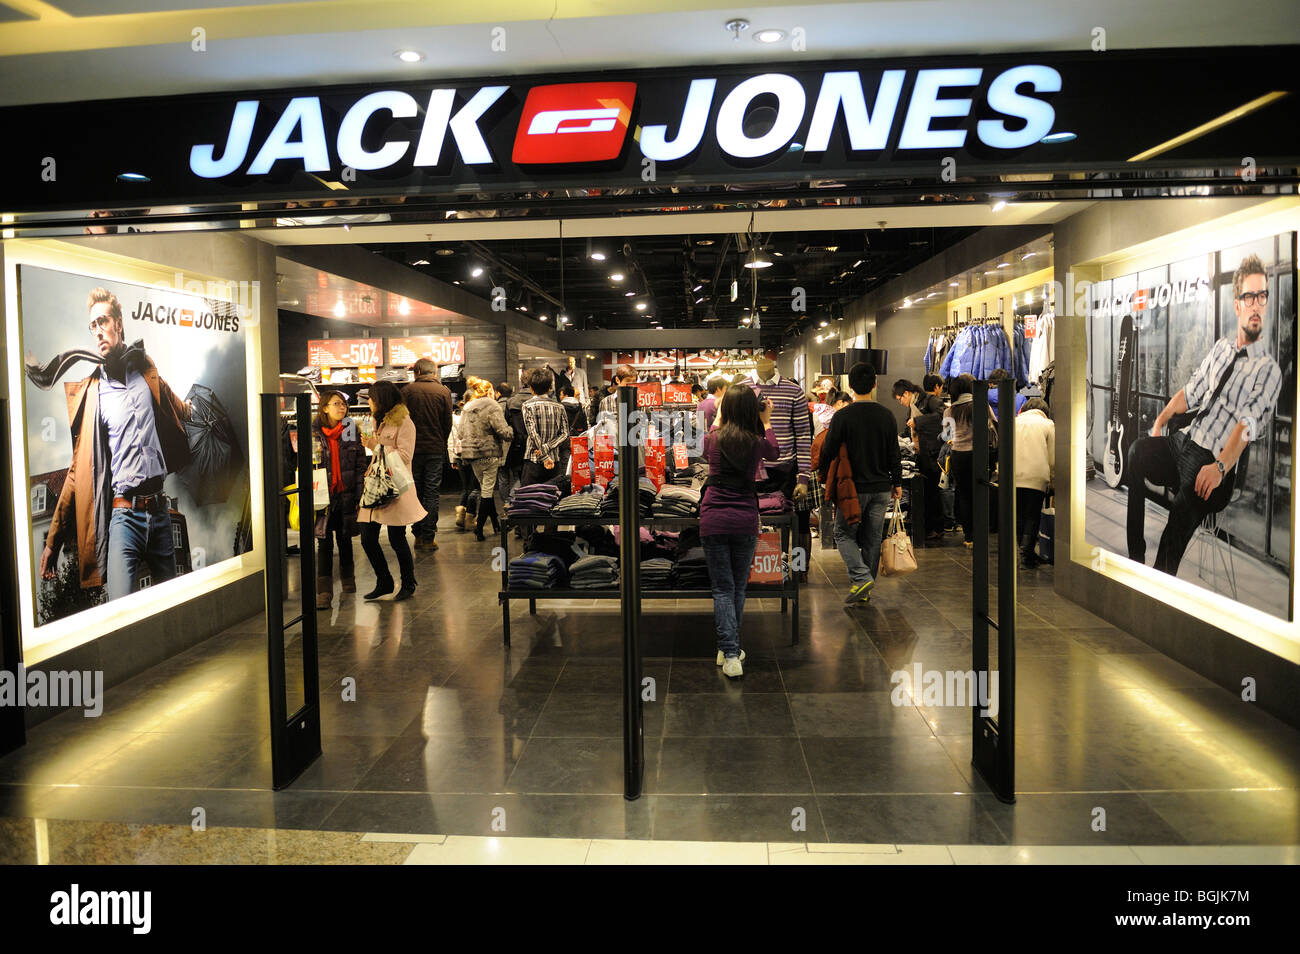 Jack & Jones shop in Dayuecheng shopping mall, Beijing, China. 09-Jan-2010  Stock Photo - Alamy